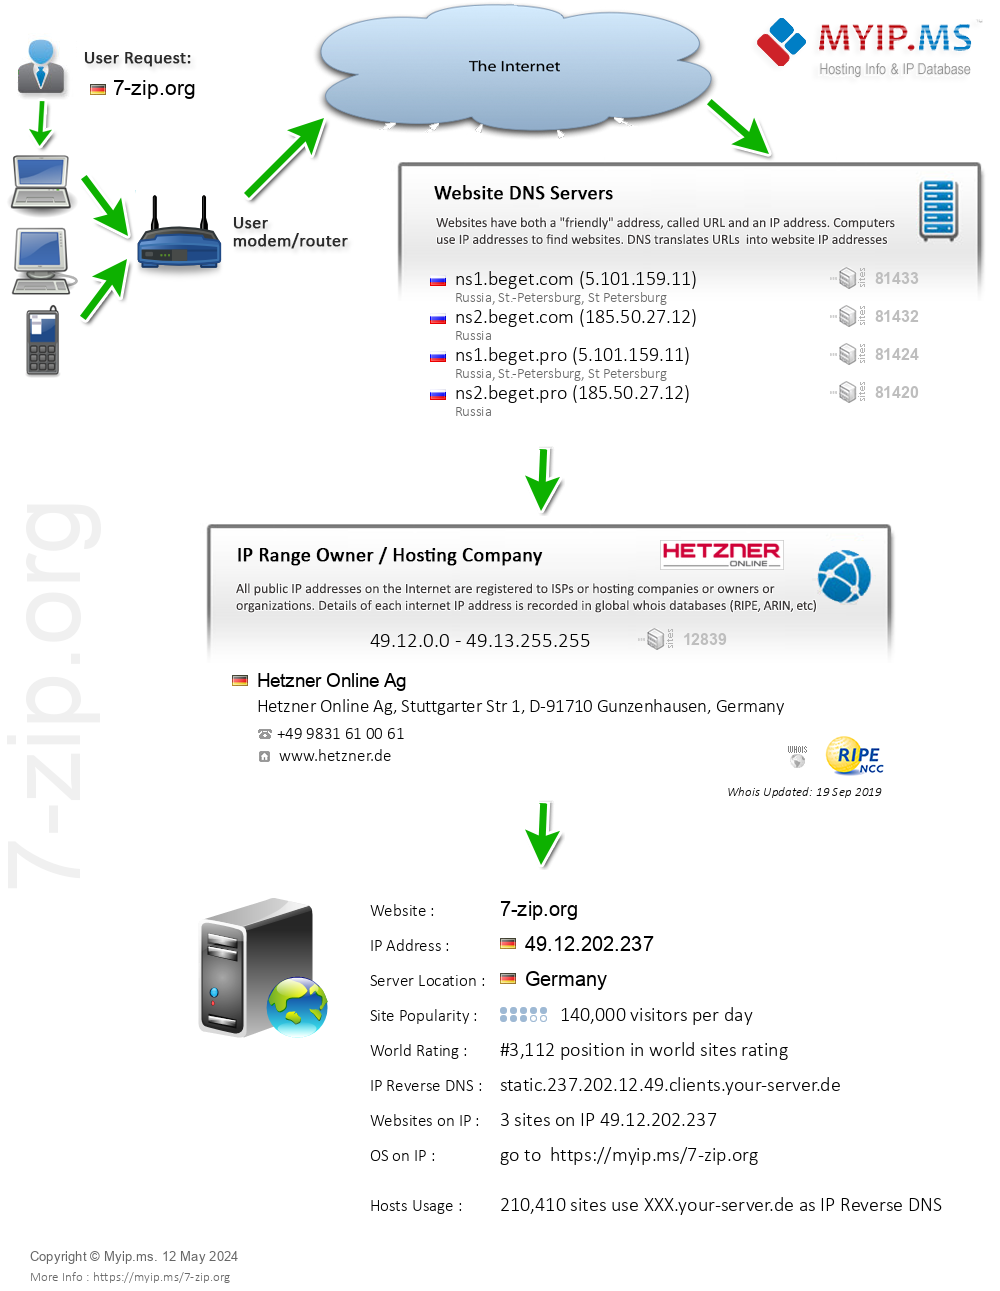 7-zip.org - Website Hosting Visual IP Diagram